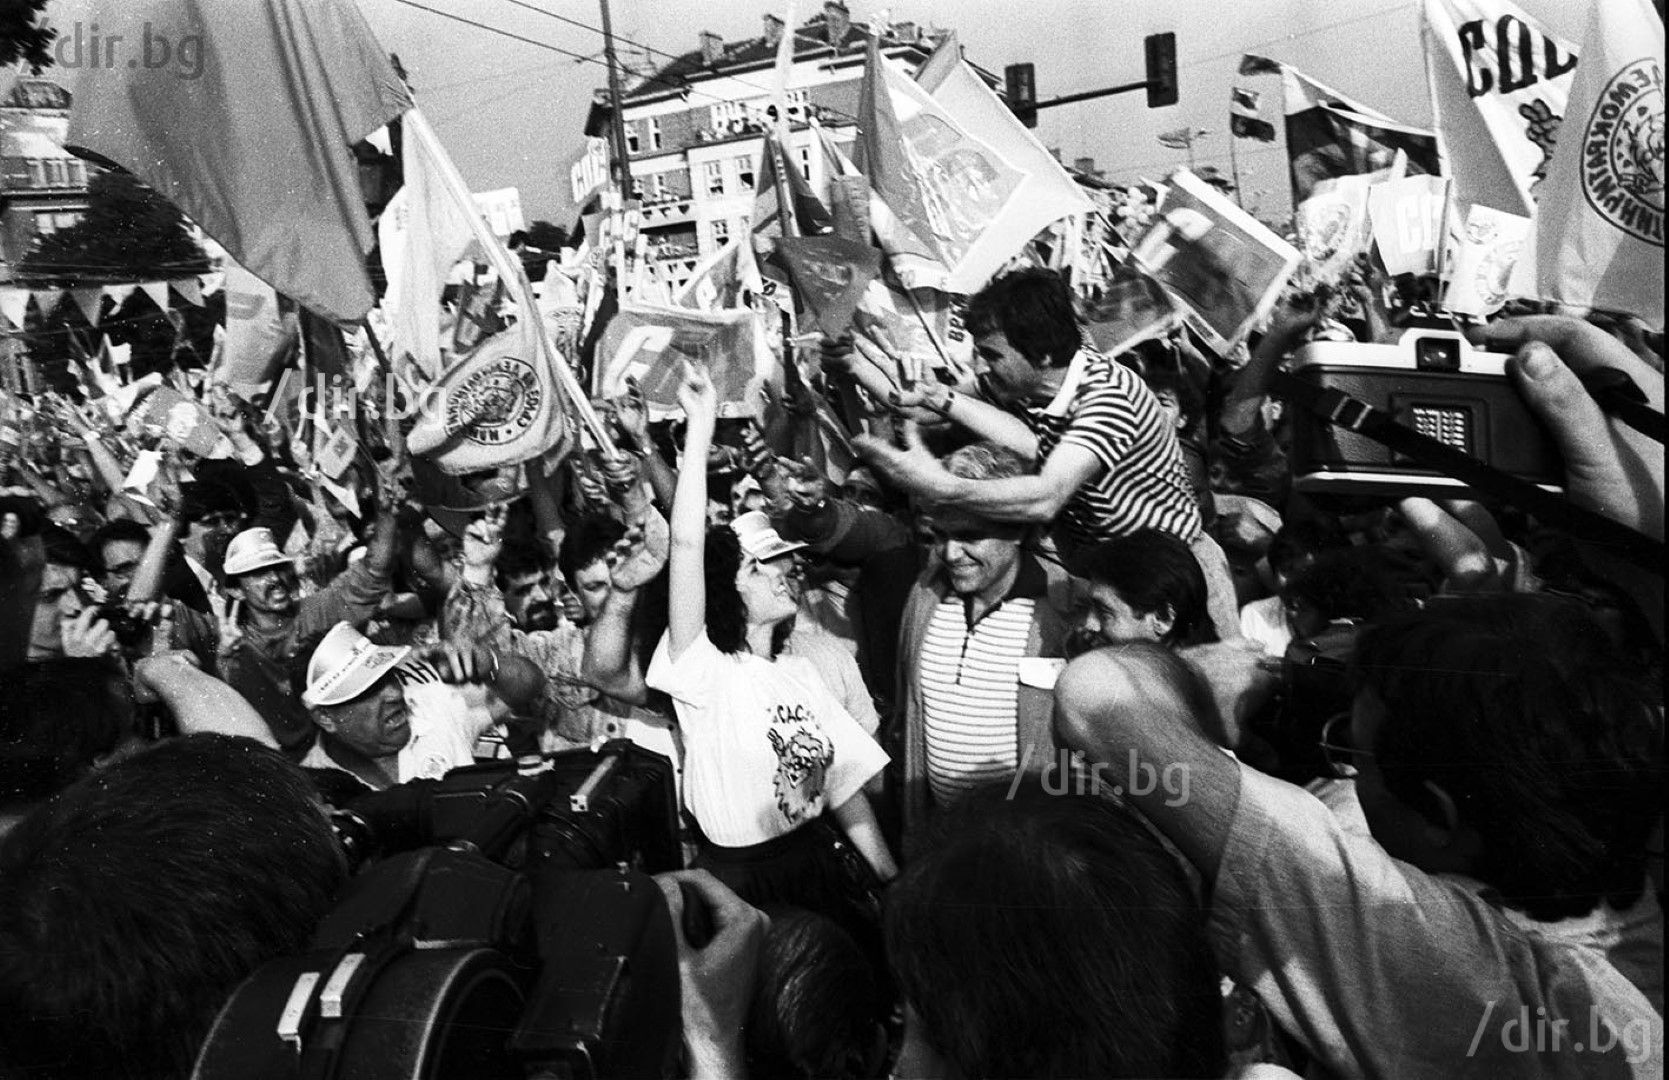 Митинг на СДС 7 юни 1990 година